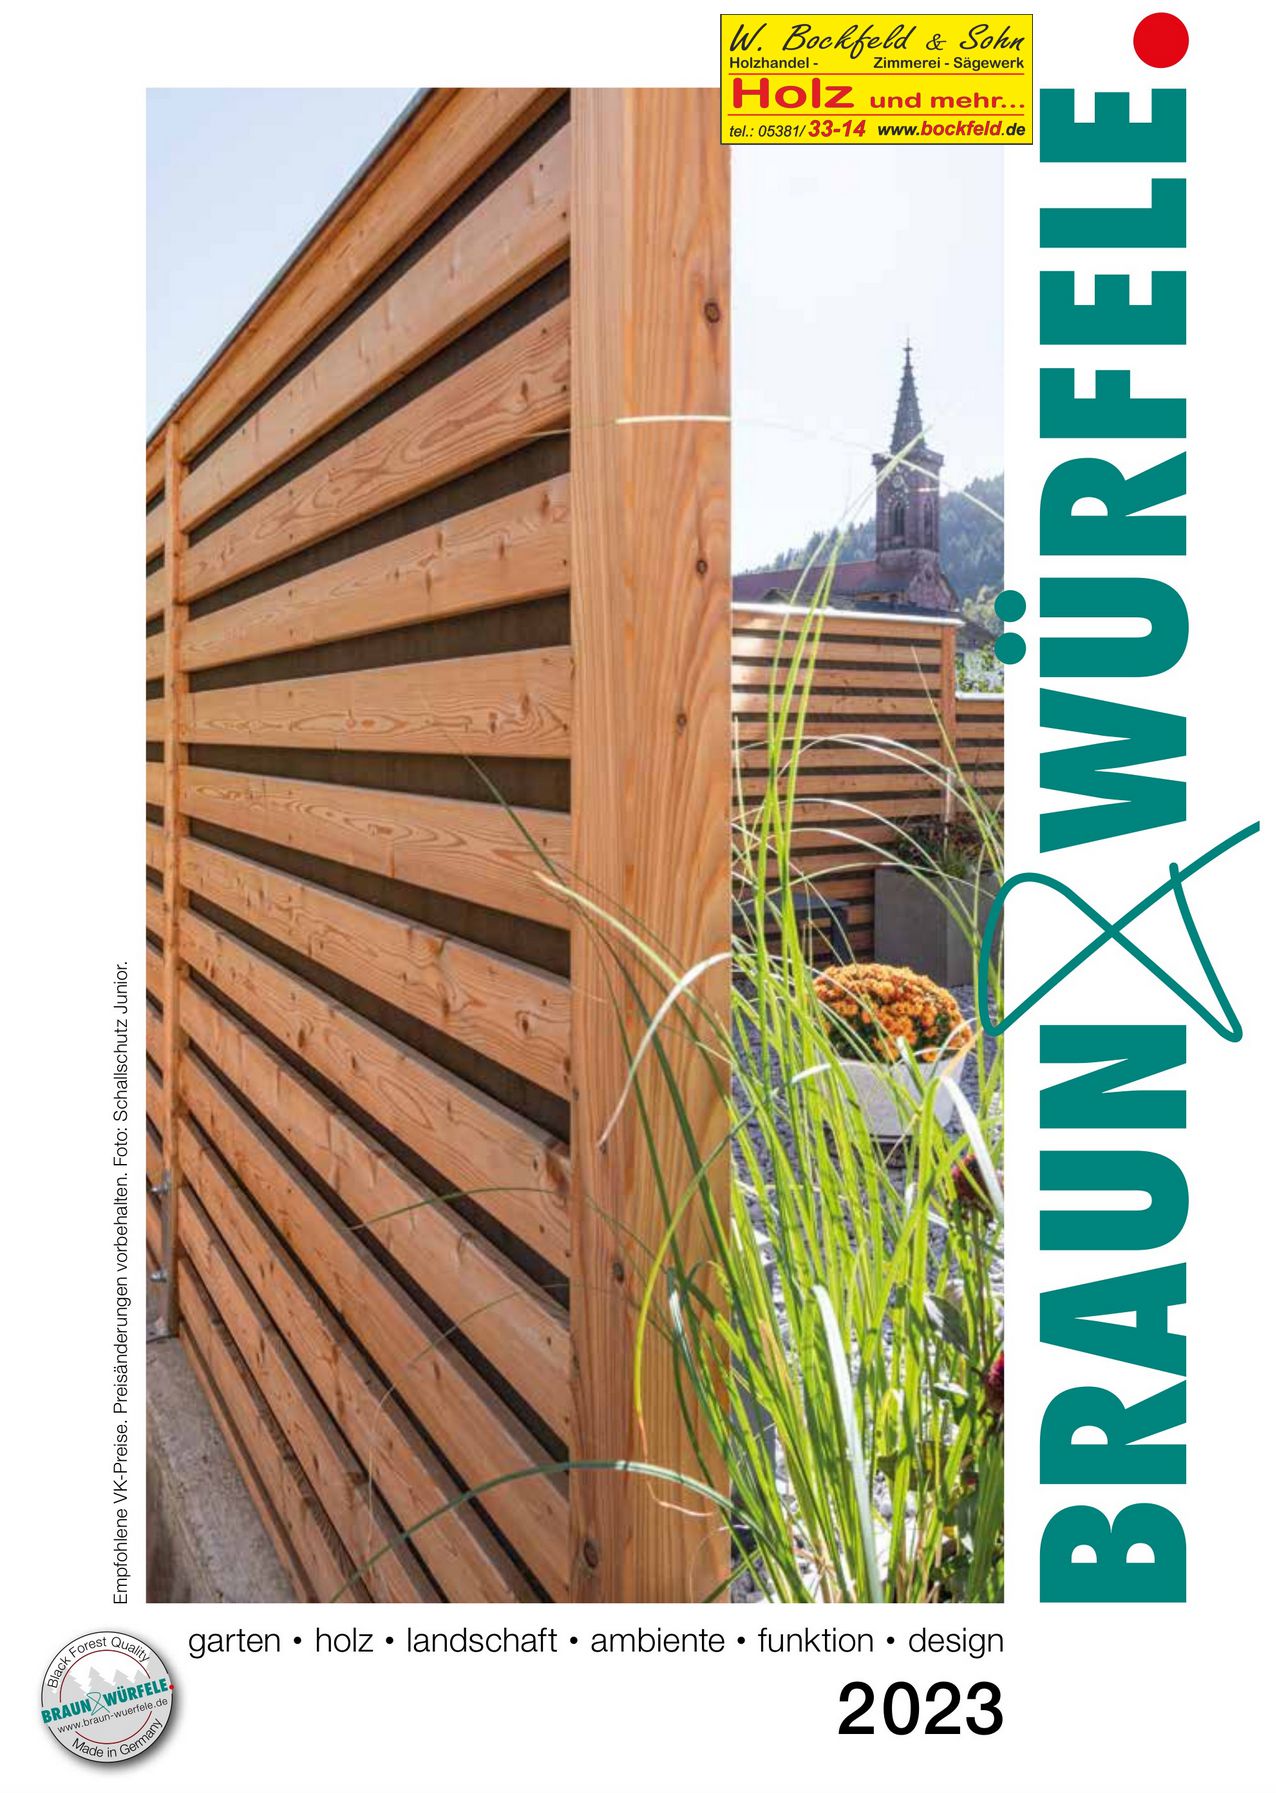 Braun Wuerfele Garten Holz seite1 - Kataloge